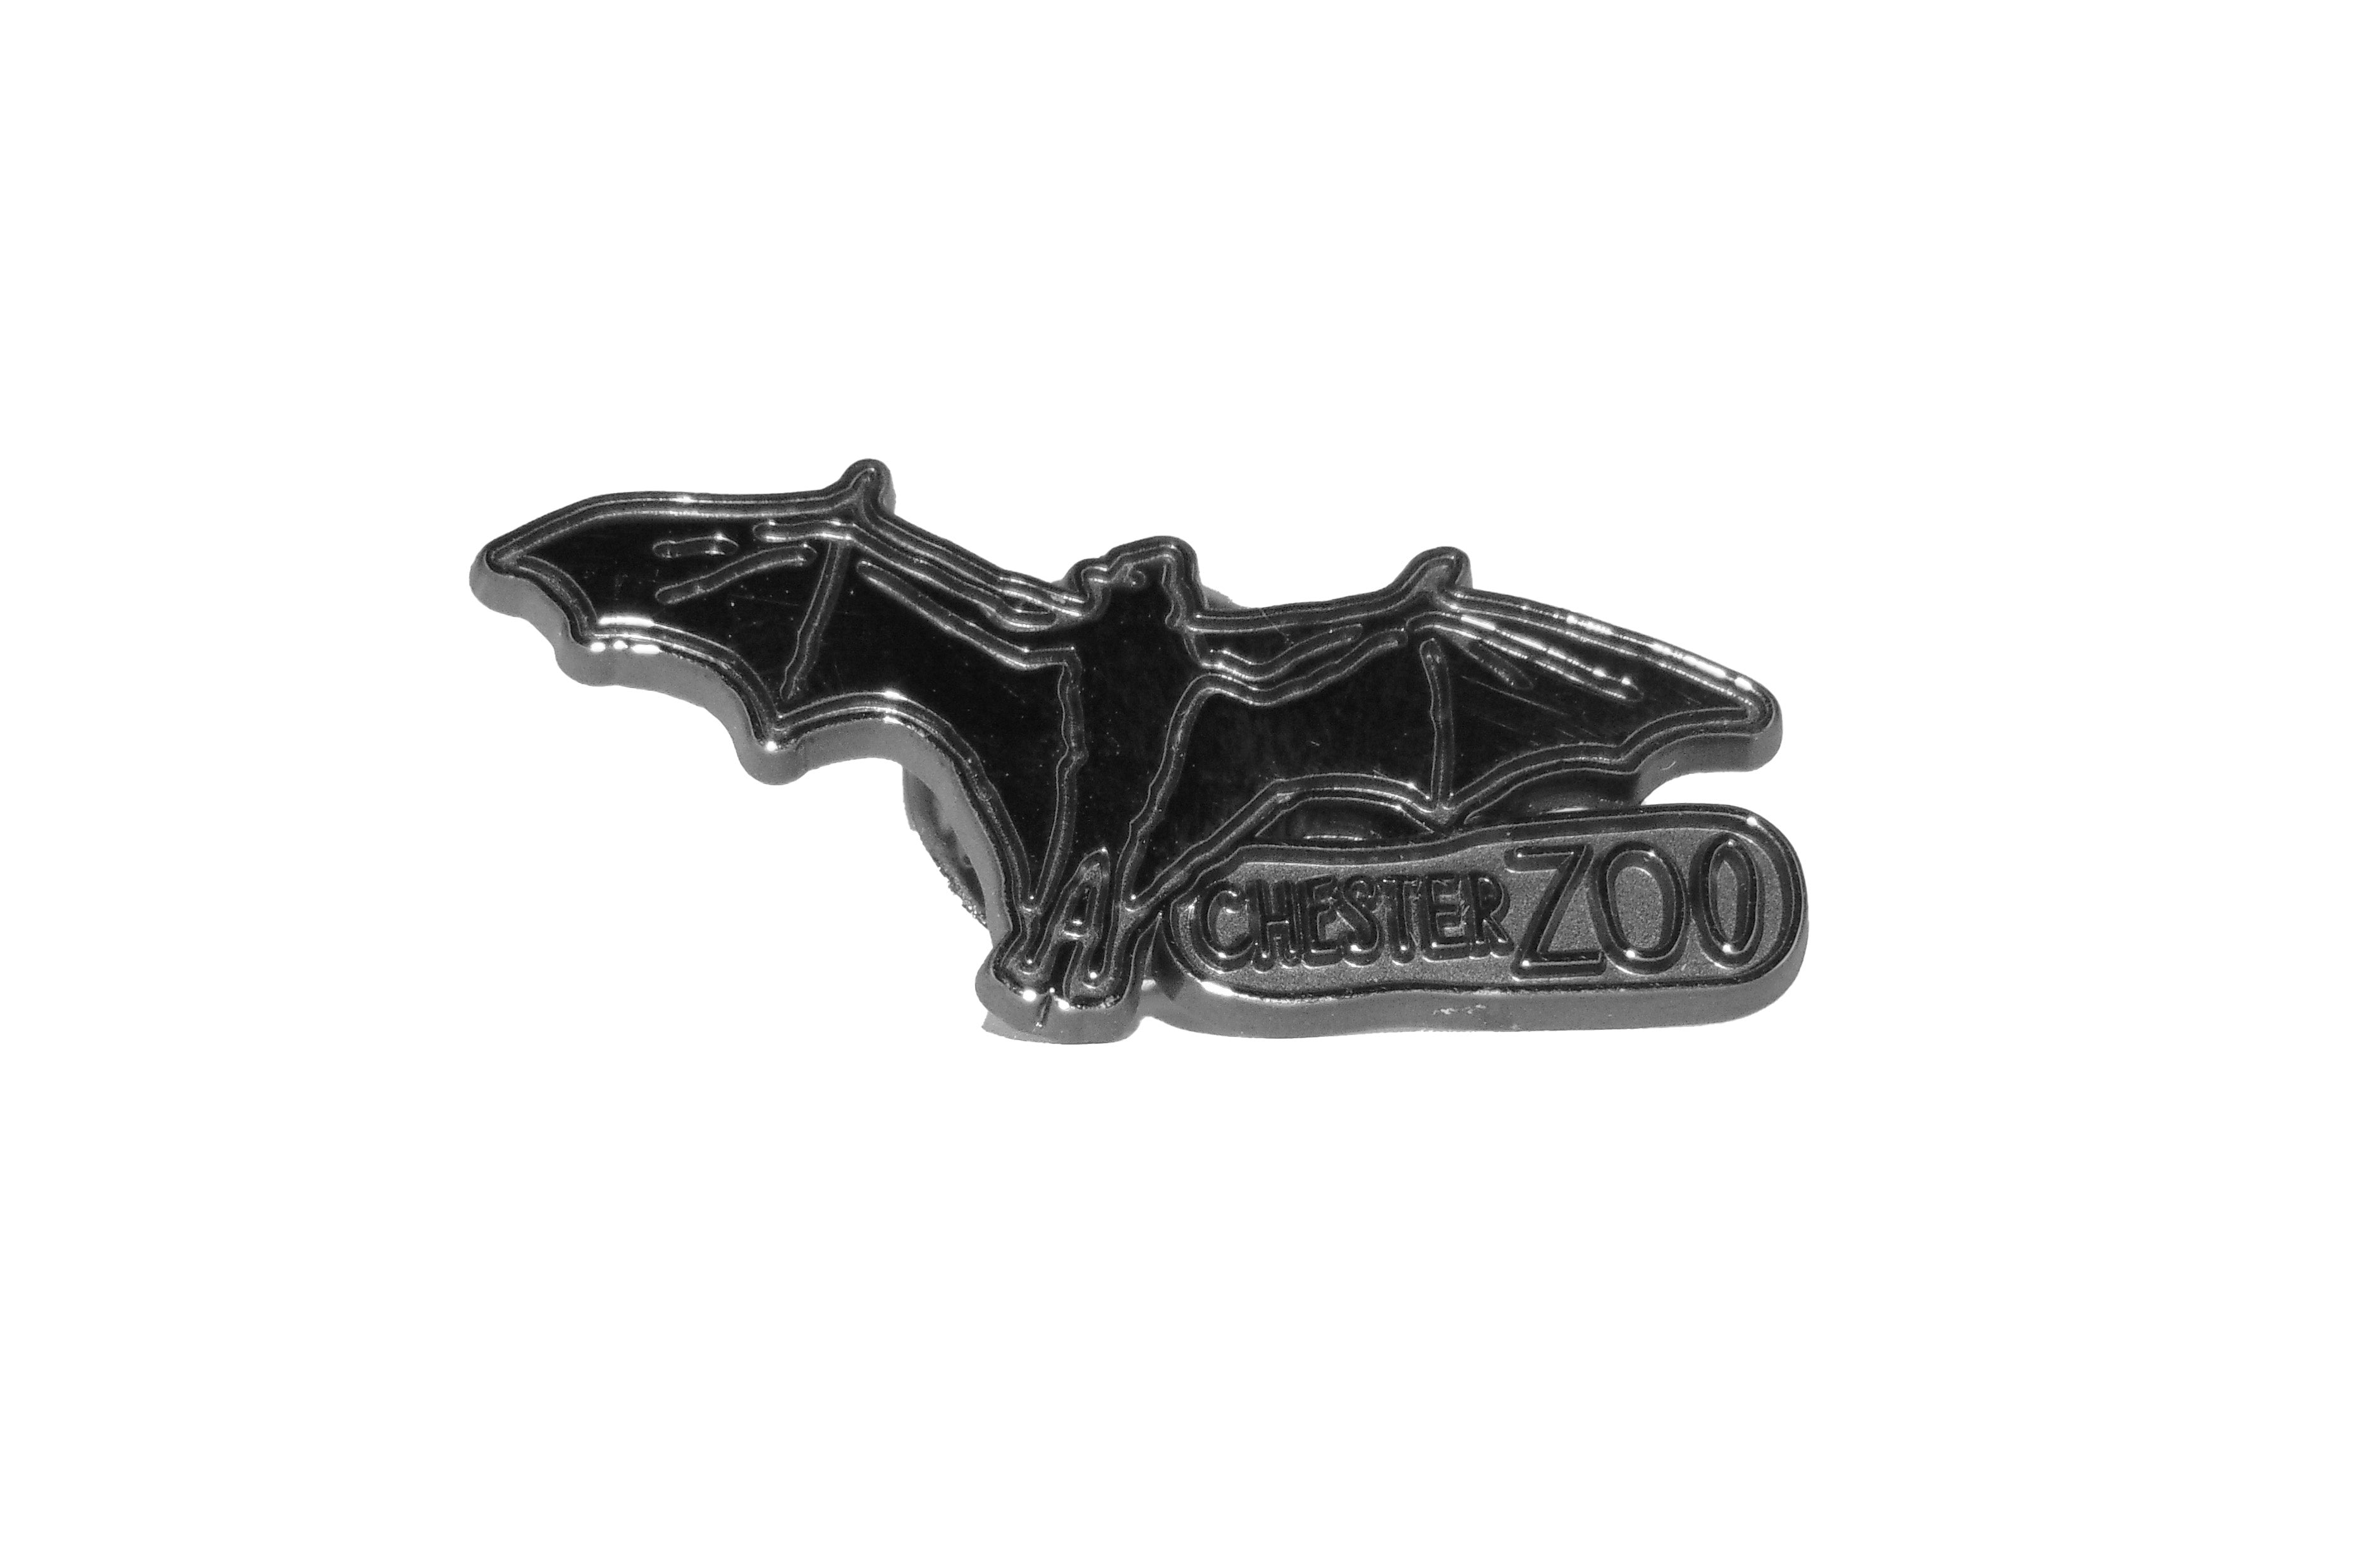 Chester Zoo Bat Metal Pin Badge – Chester Zoo Enterprises Ltd